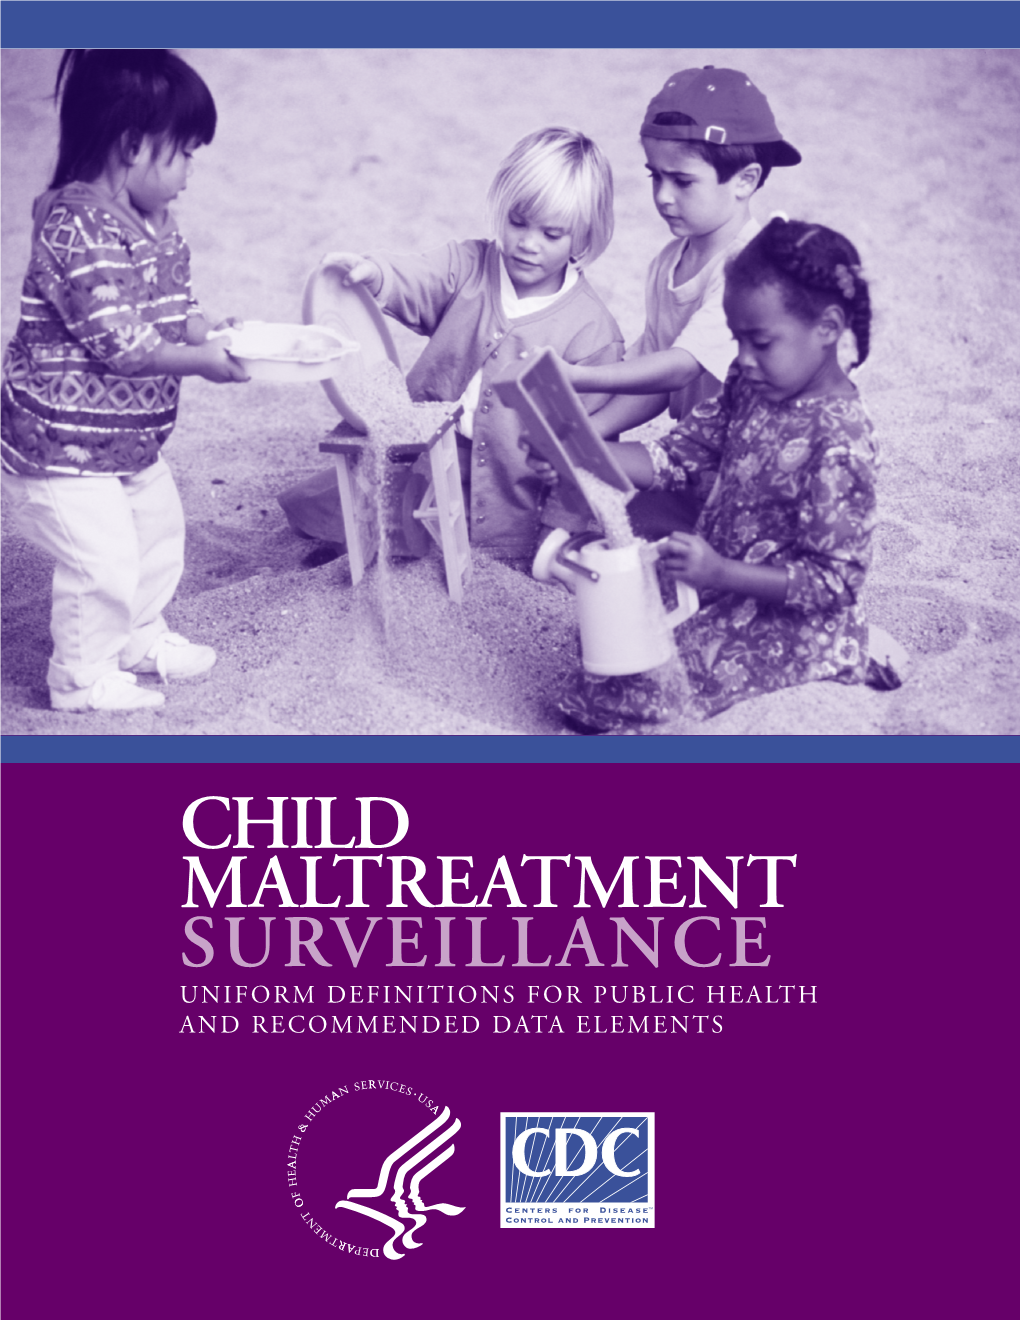 Child Maltreatment Surveillance: Uniform Definitions